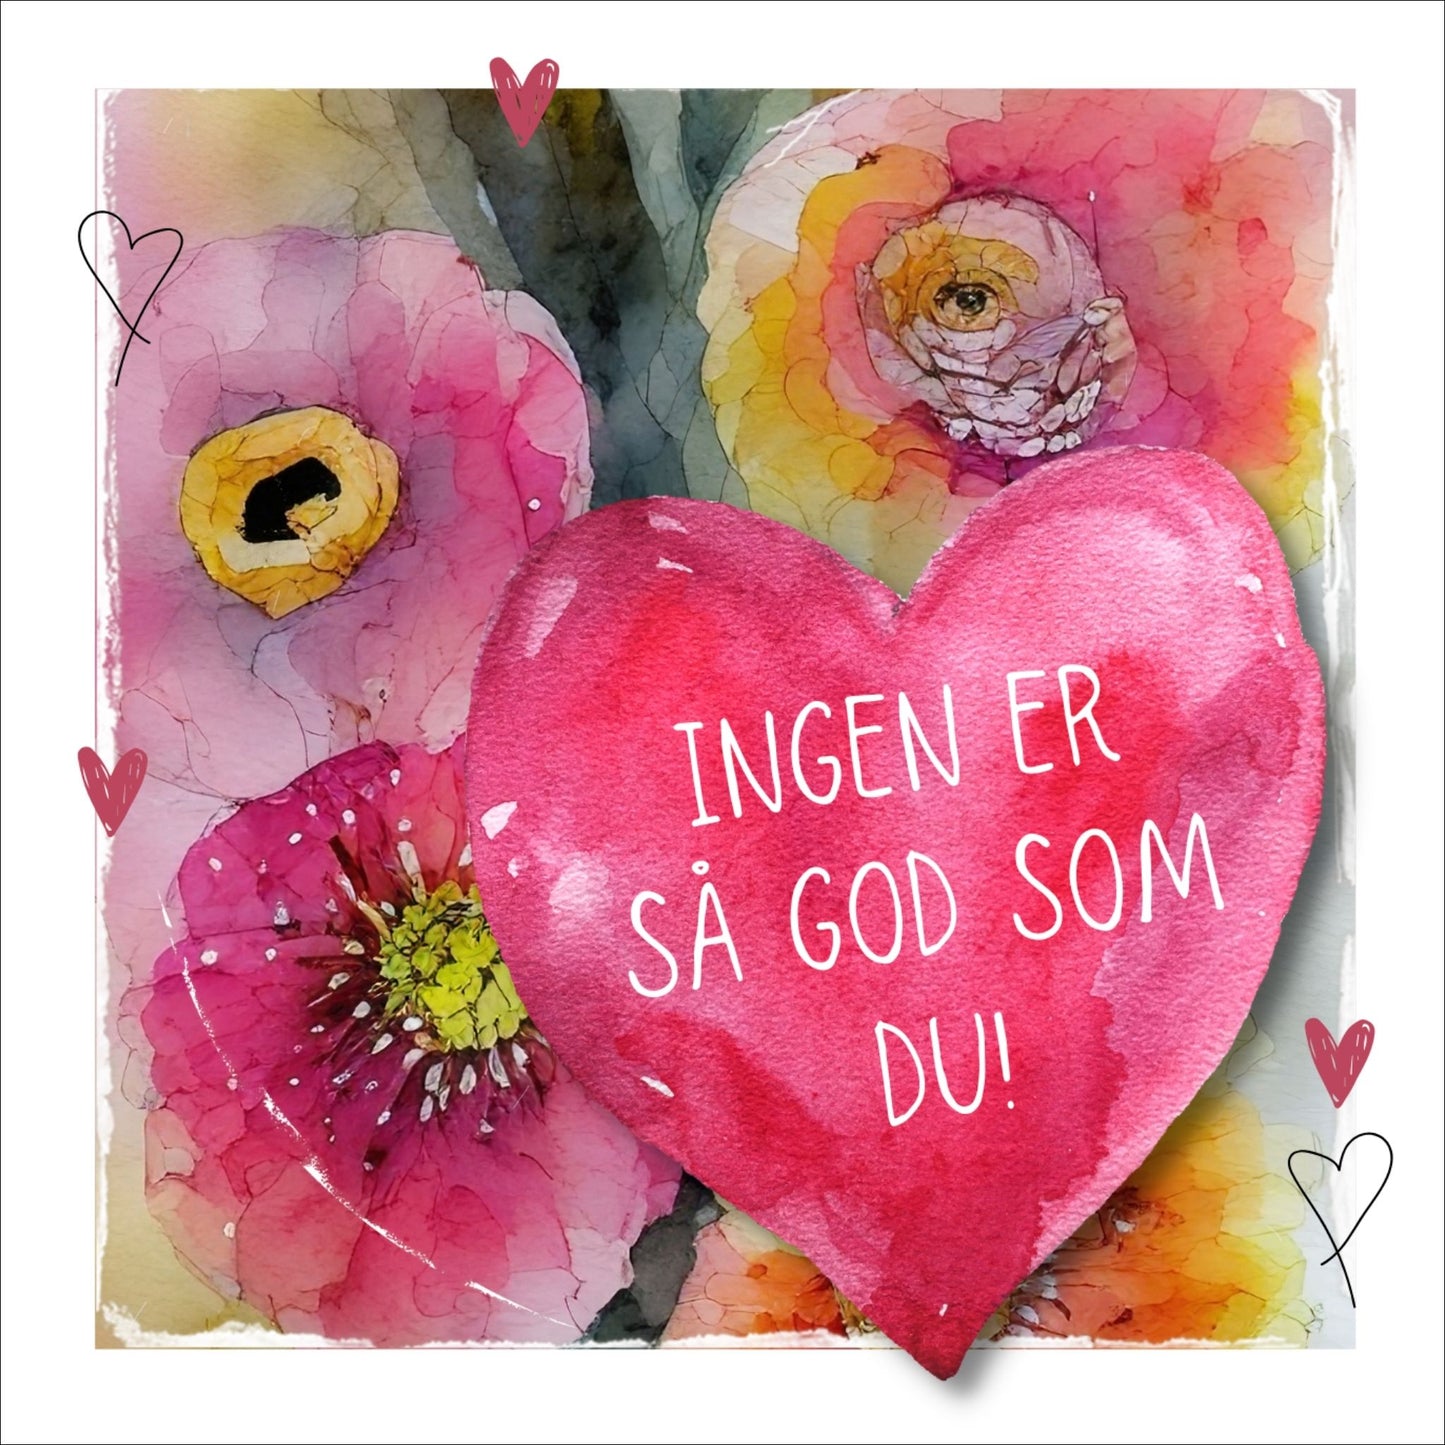 Grafisk plakat med et rosa hjerte påført tekst "Ingen er så god som du!". Bagrunn i cerise og guloransje blomster. Kortet har en hvit kant rundt på 1,5 cm.